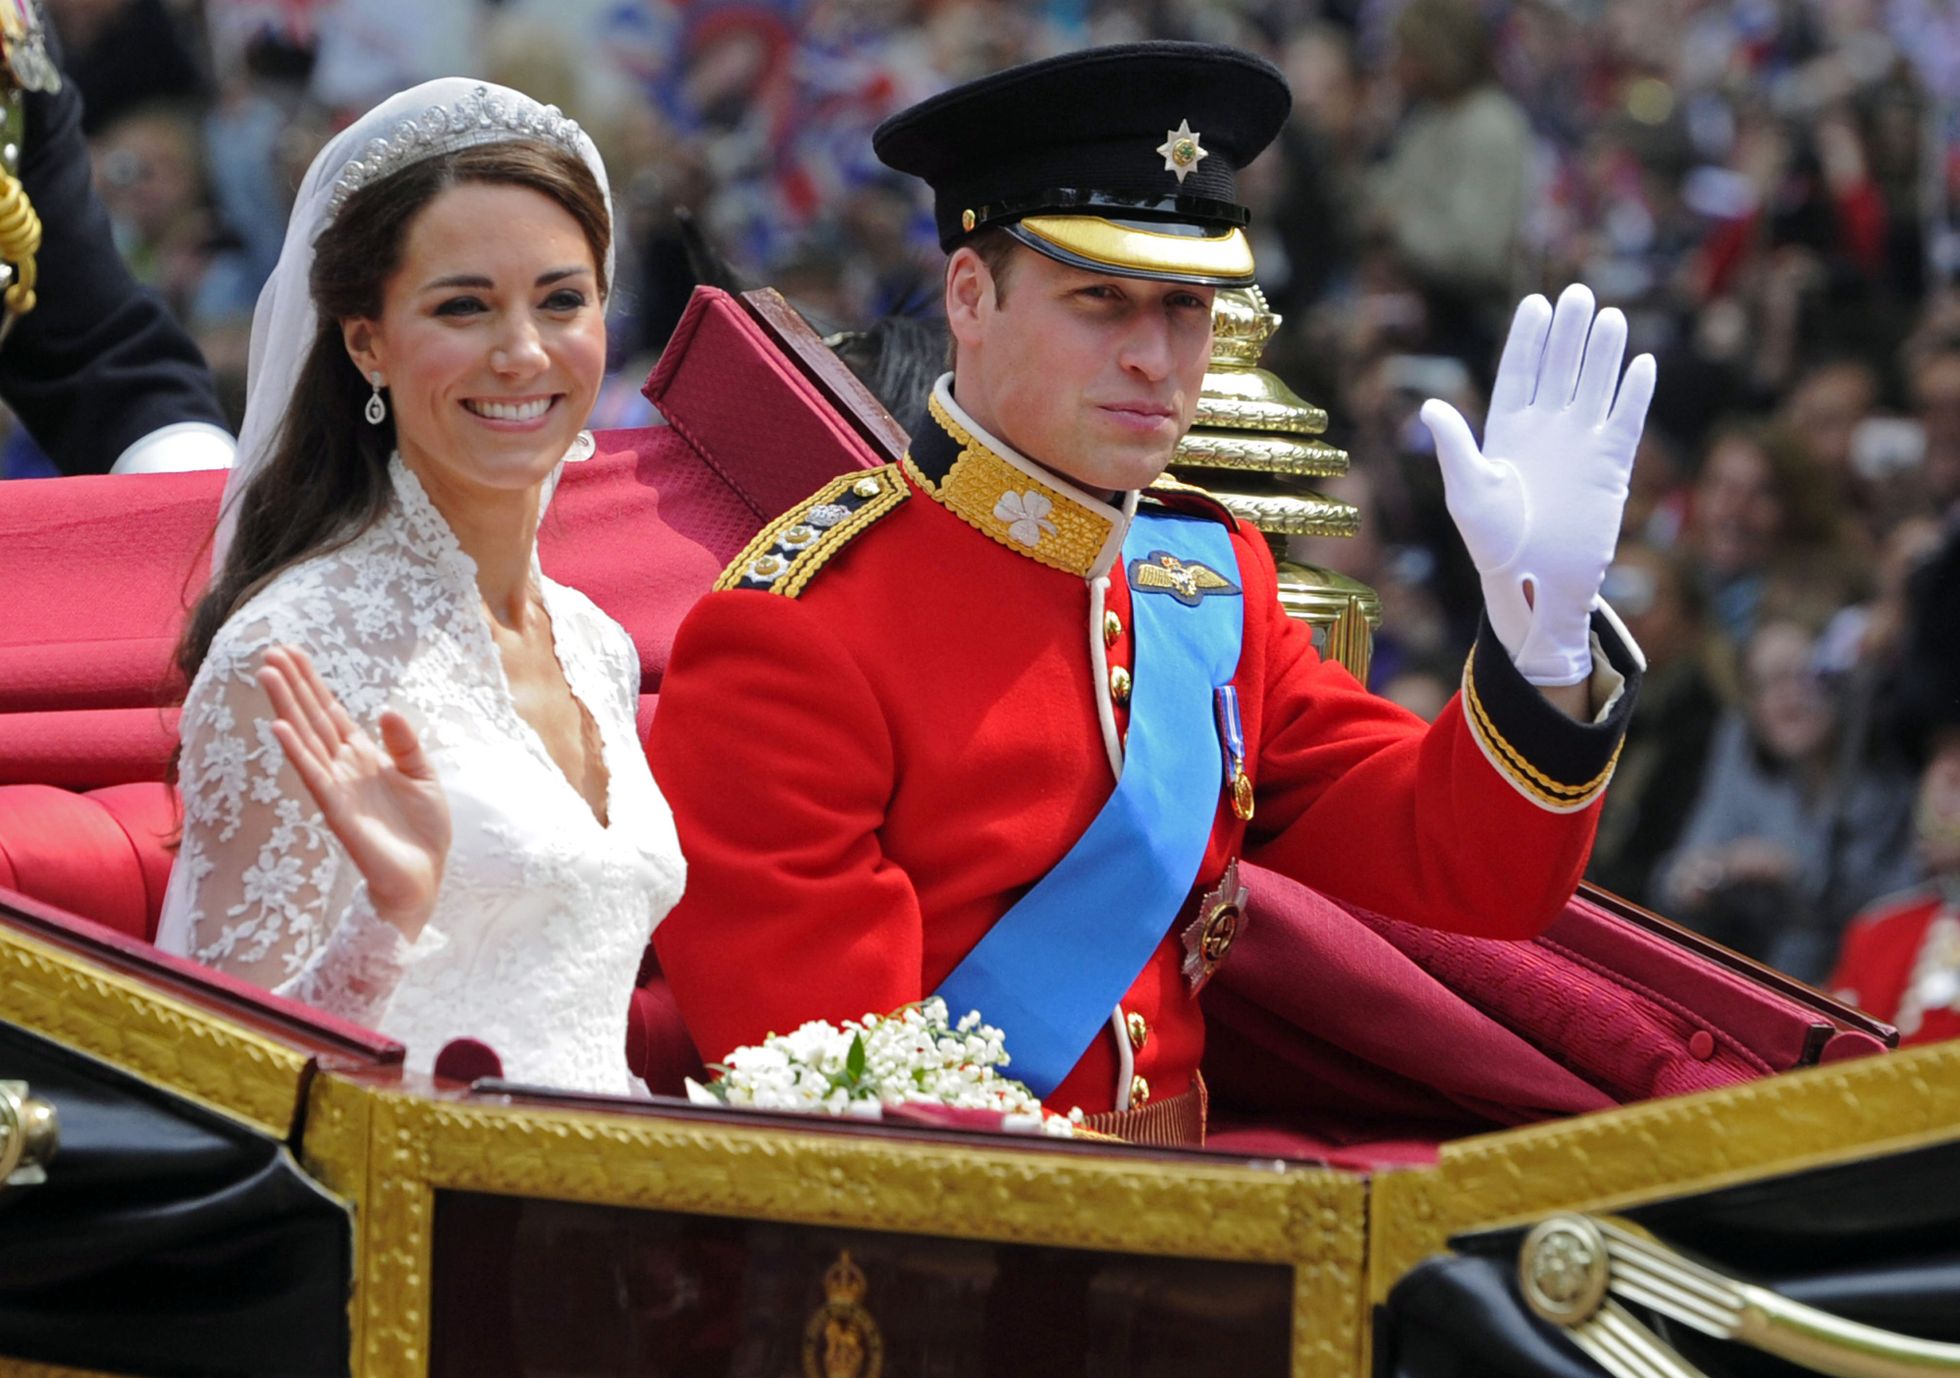 Prints William ja Cambridge'i hertsoginna Kate abiellusid 2011. aastal.